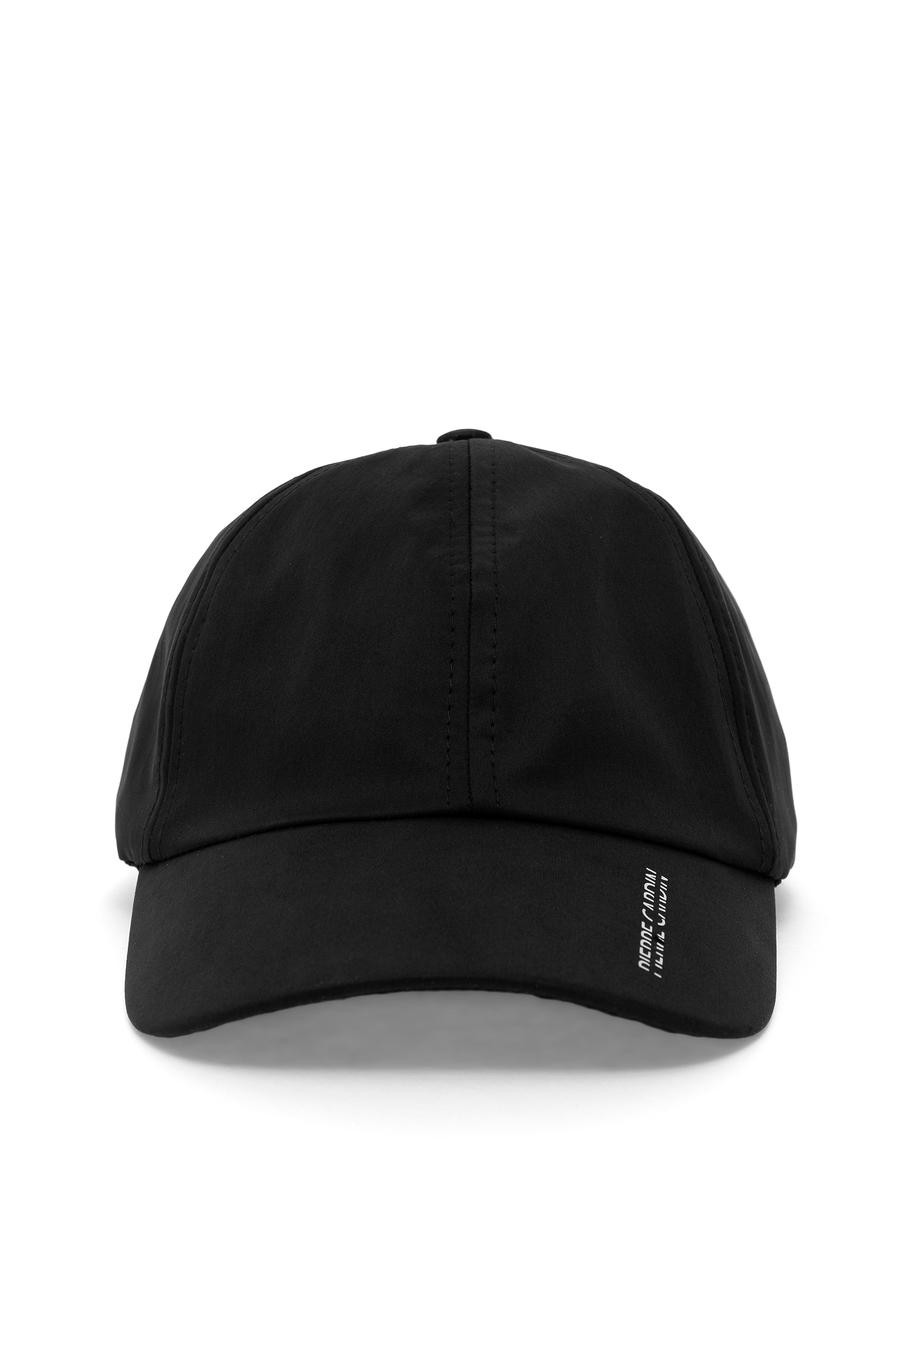 کلاه  سیاه  استاندارد  مردانه  پیرکاردین